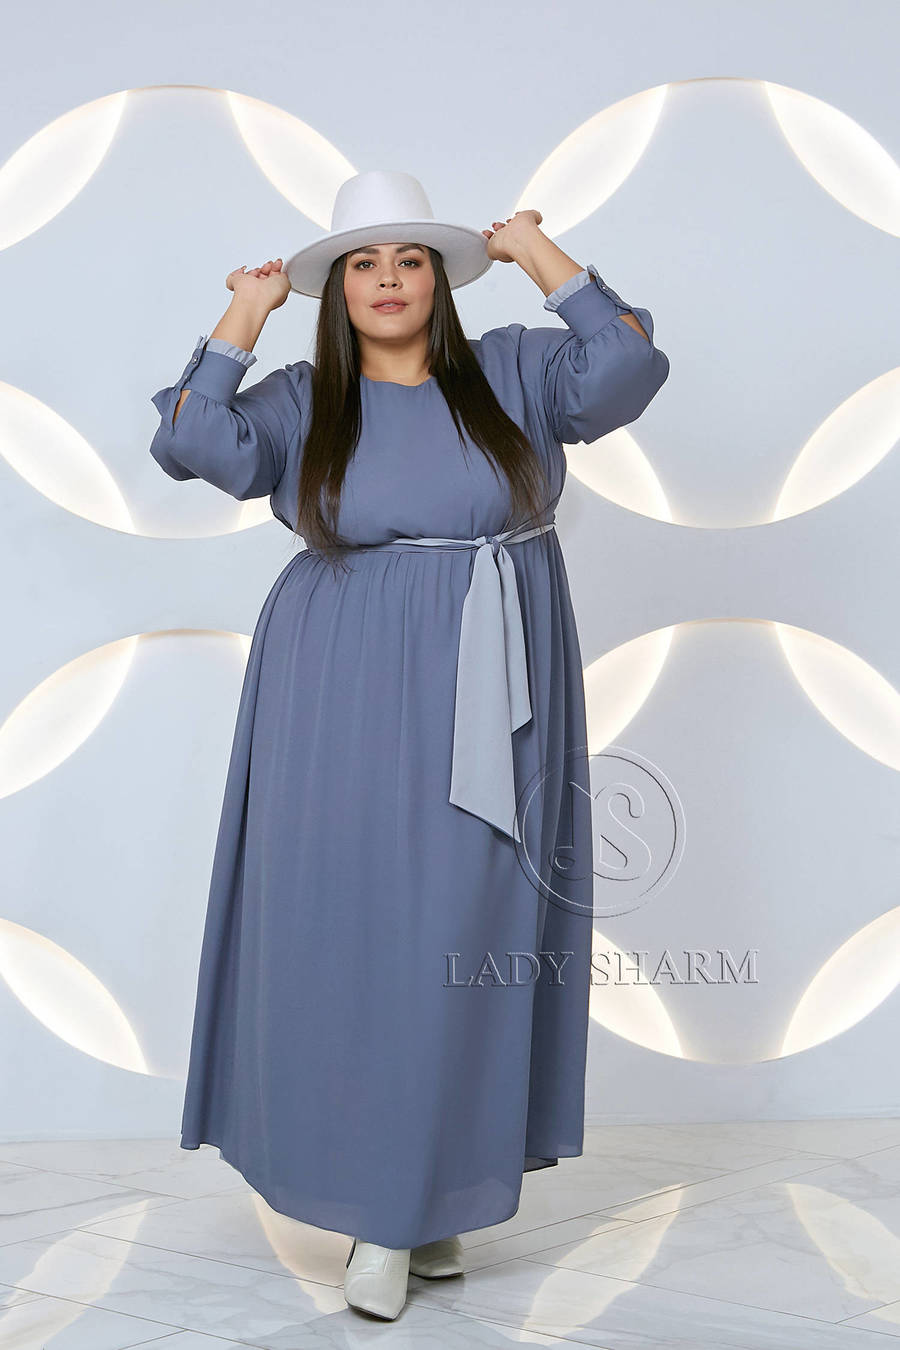 Известная модель Диляра Ларина представила новую коллекцию одежды Lady Sharm: Модные образы, в которые хочется влюбиться!